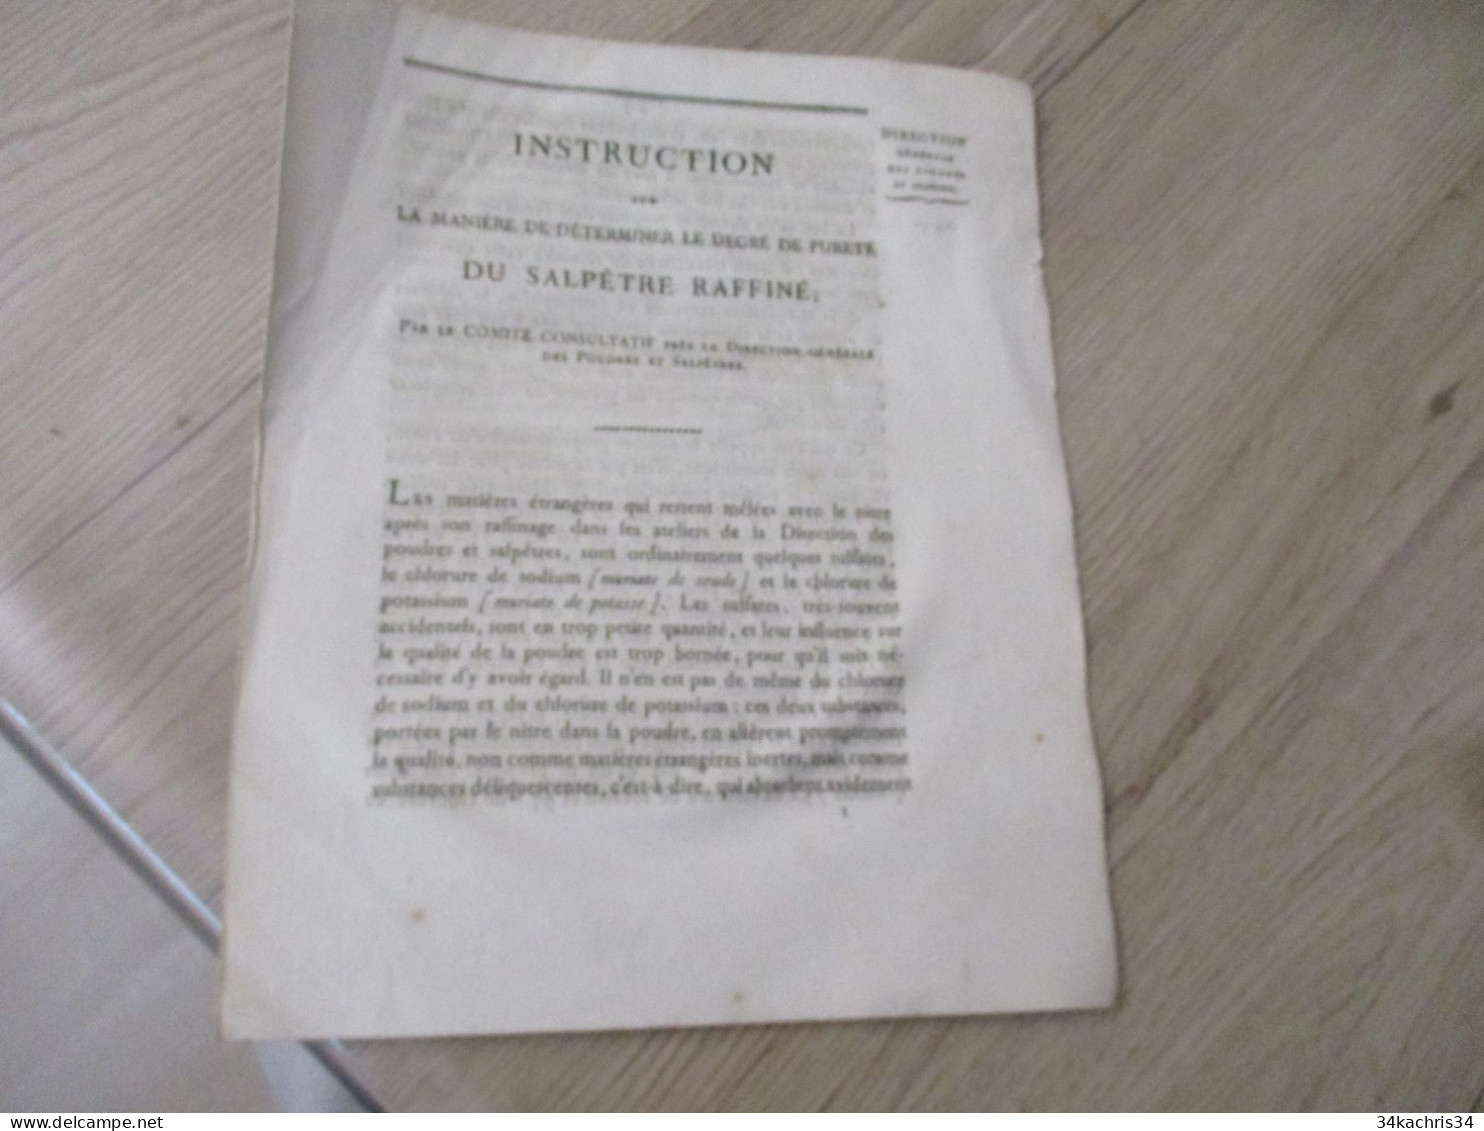 Instruction Sur La Manière Le Degré De Pureté Du Salpêtre Raffiné 1818 Ruty - Historical Documents